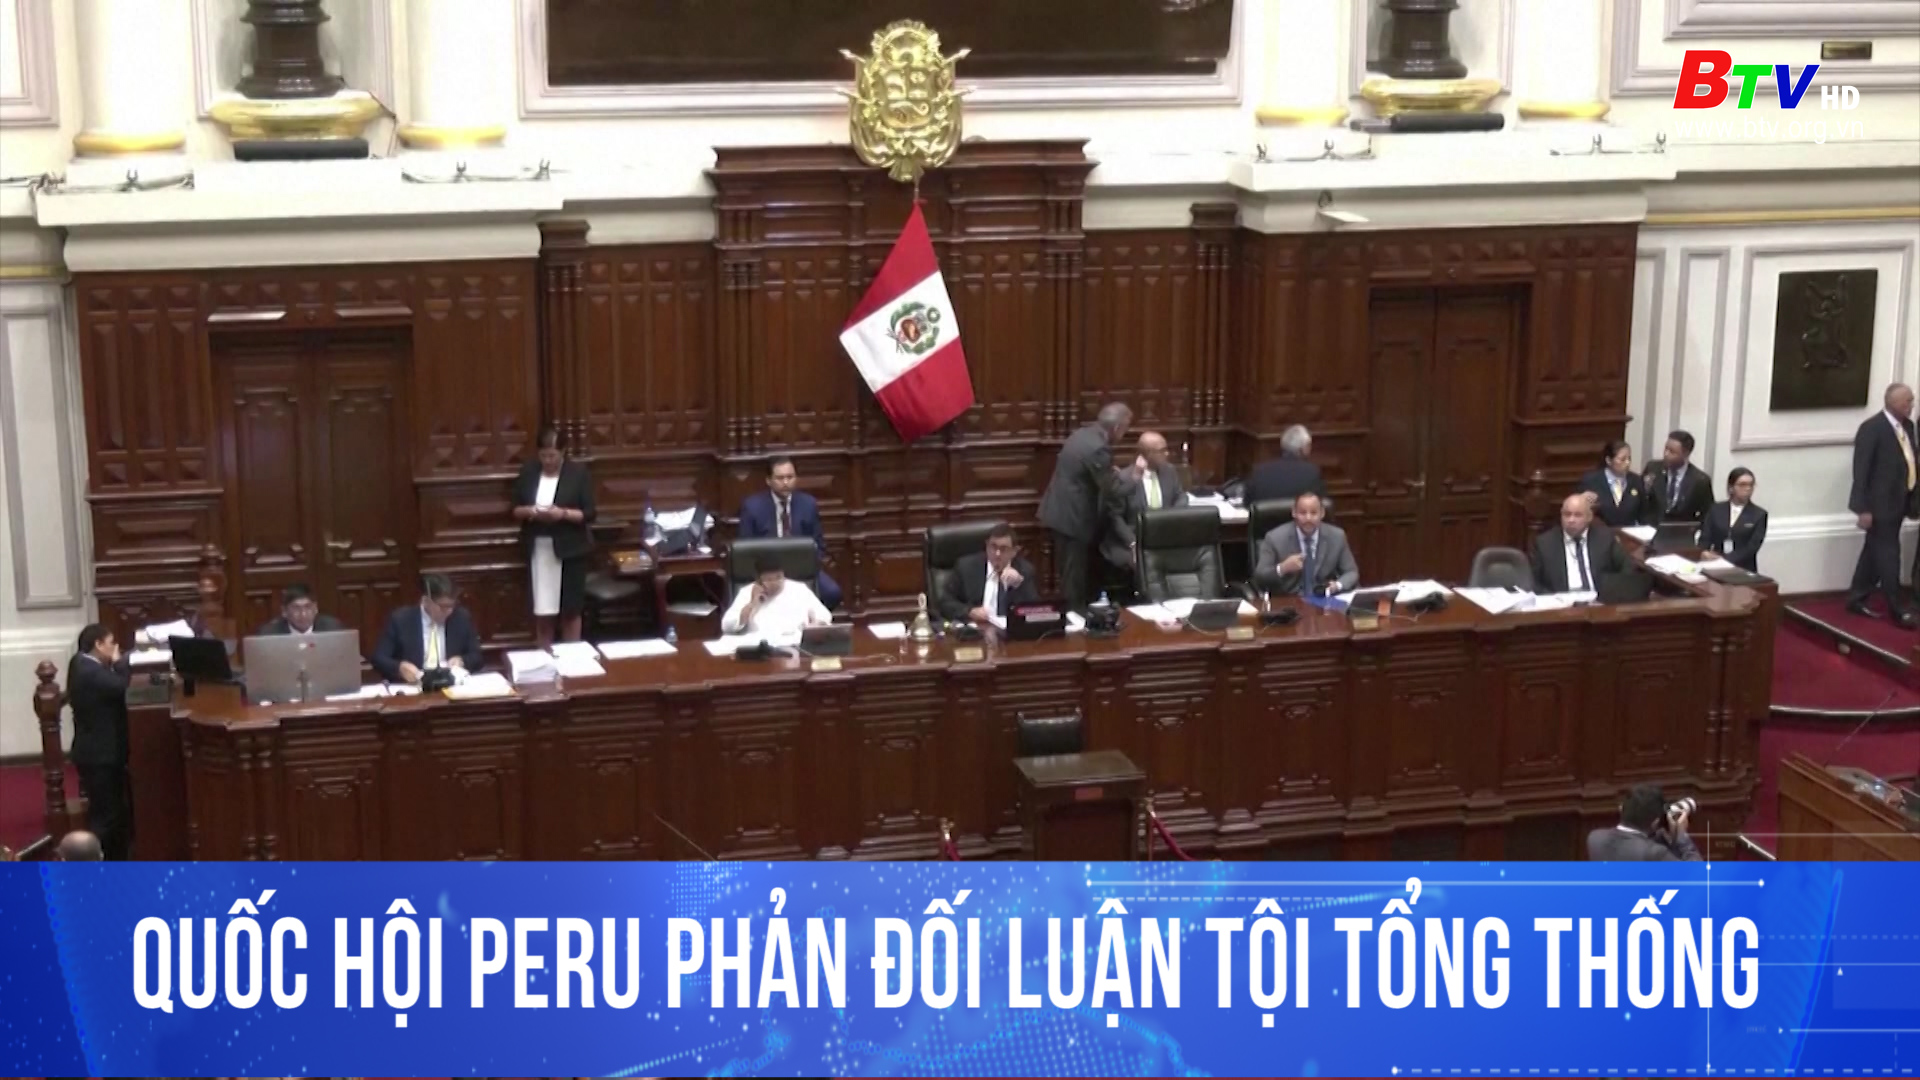 Quốc hội Peru phản đối luận tội tổng thống